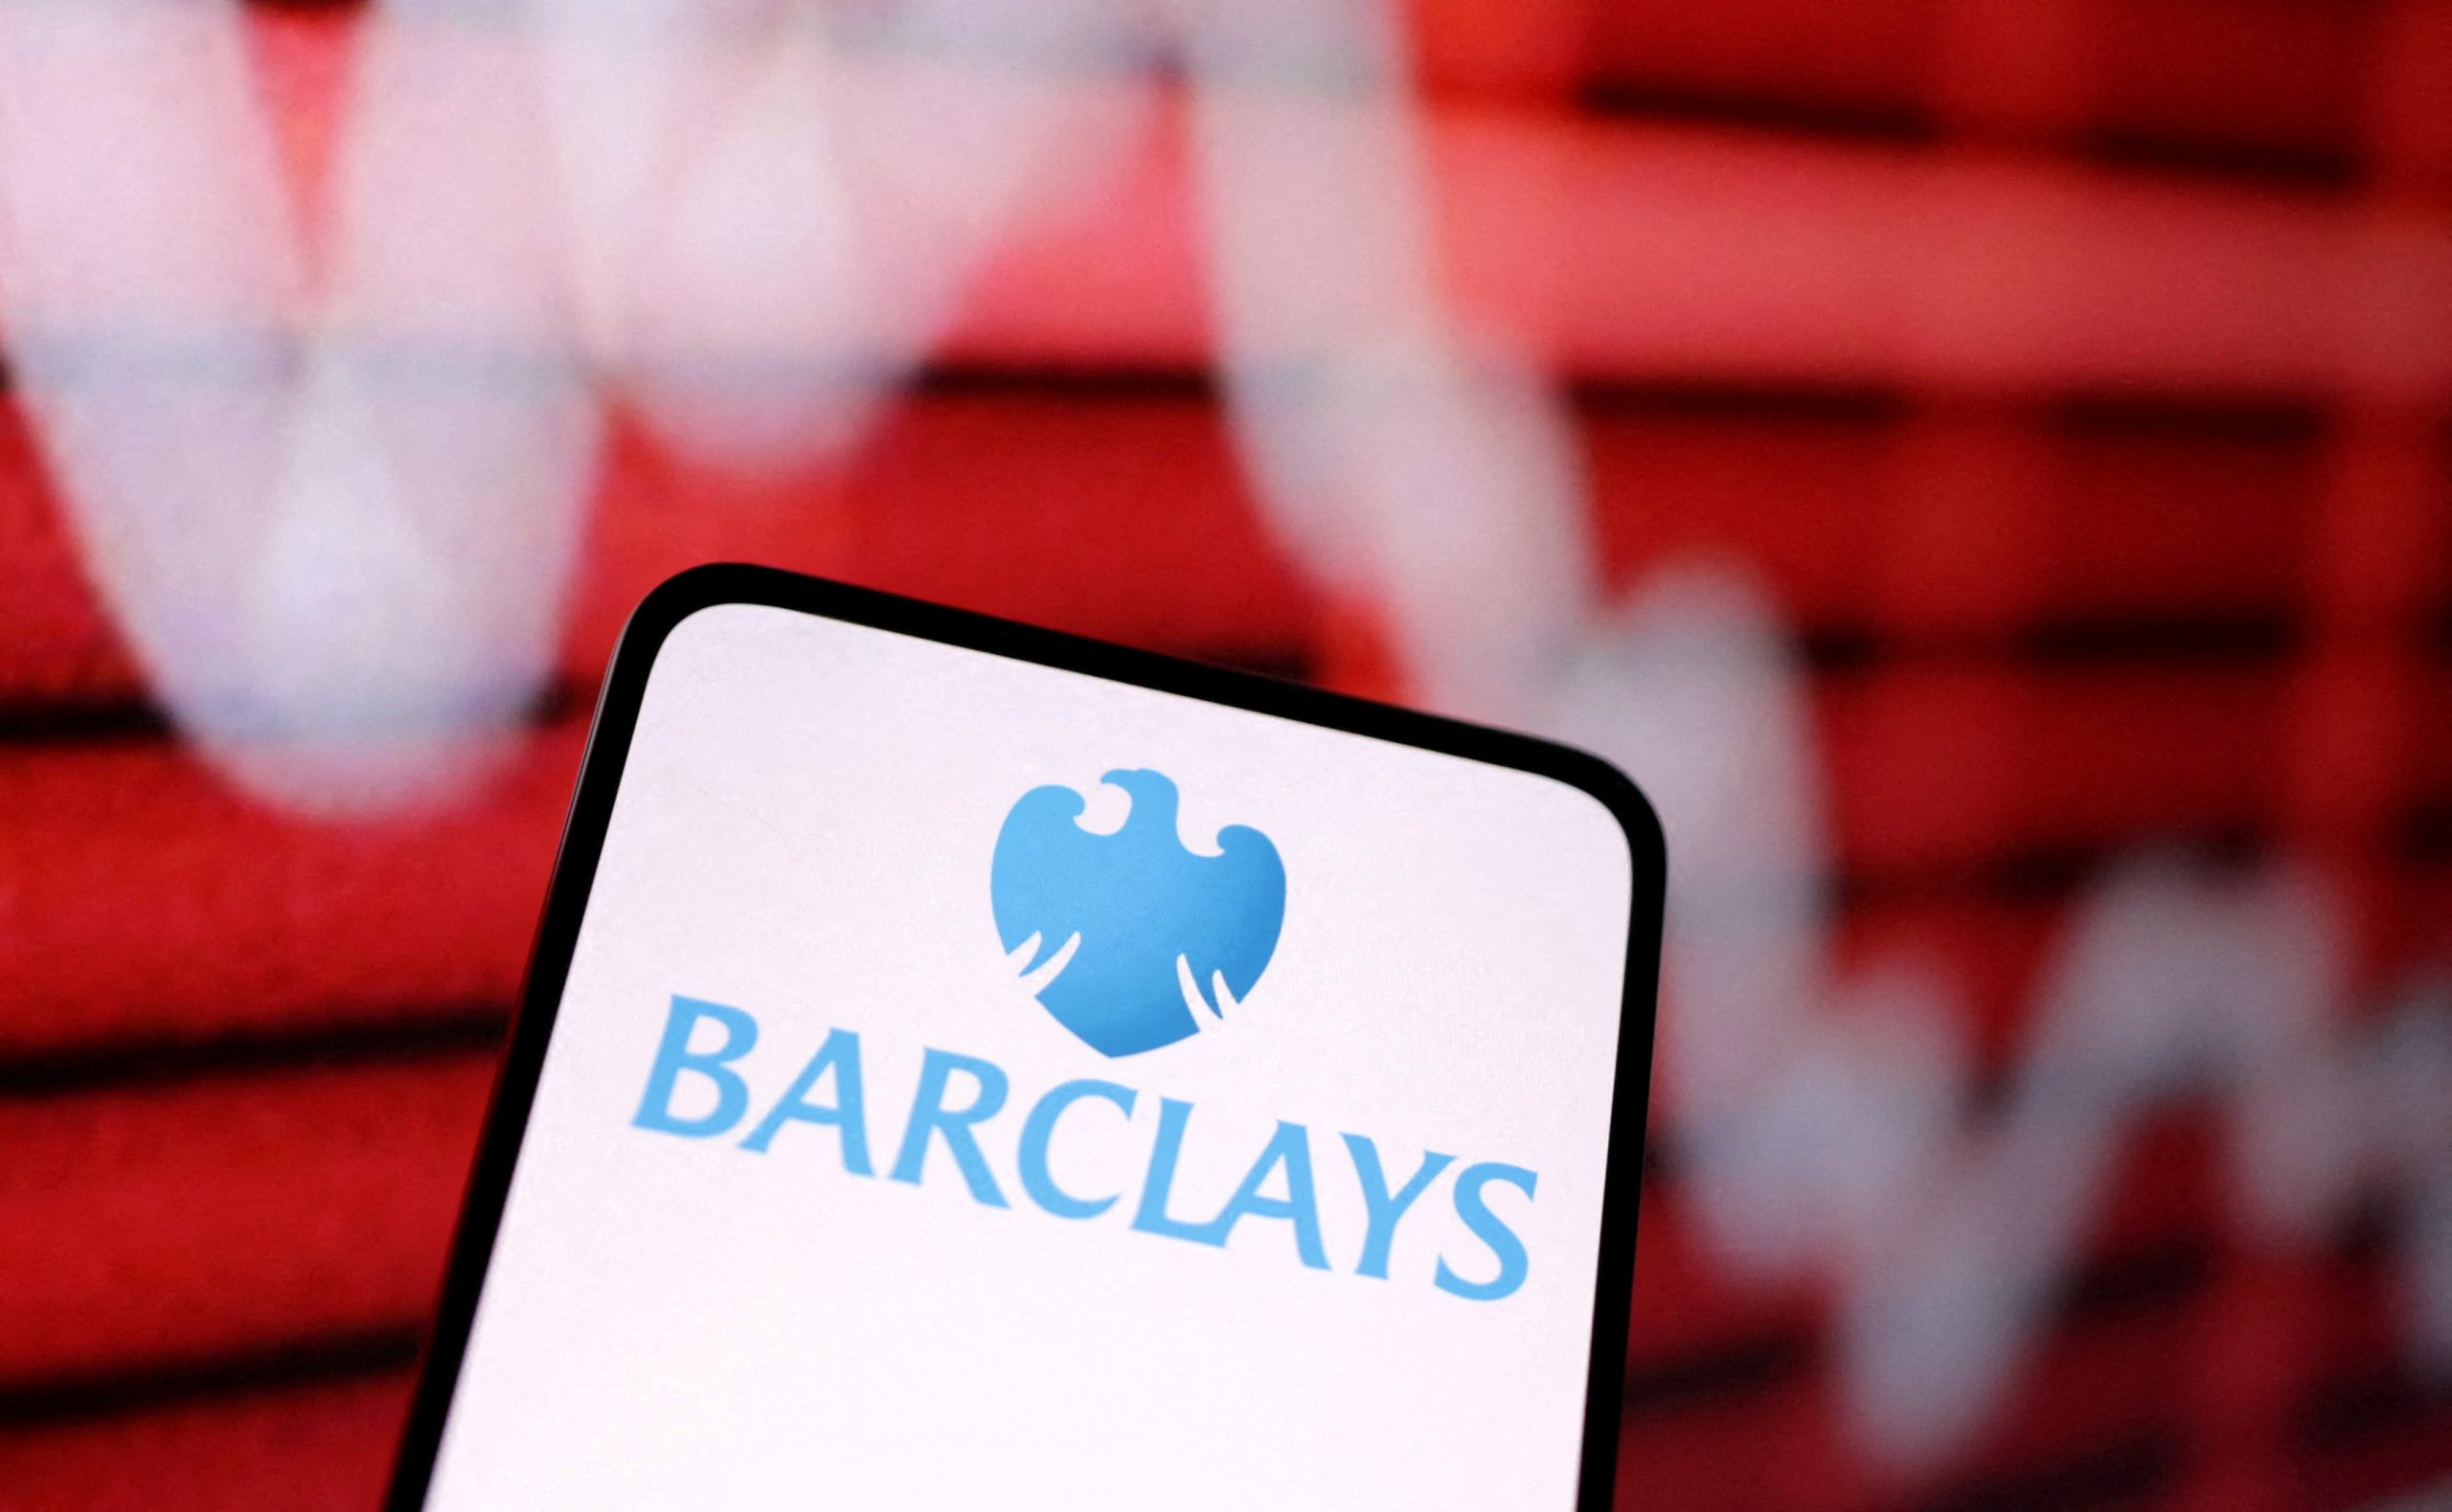 Barclays: Νικήτρια σε δικαστική αναμέτρηση με τρεις υπαλλήλους που την κατηγορούσαν για ρατσισμό